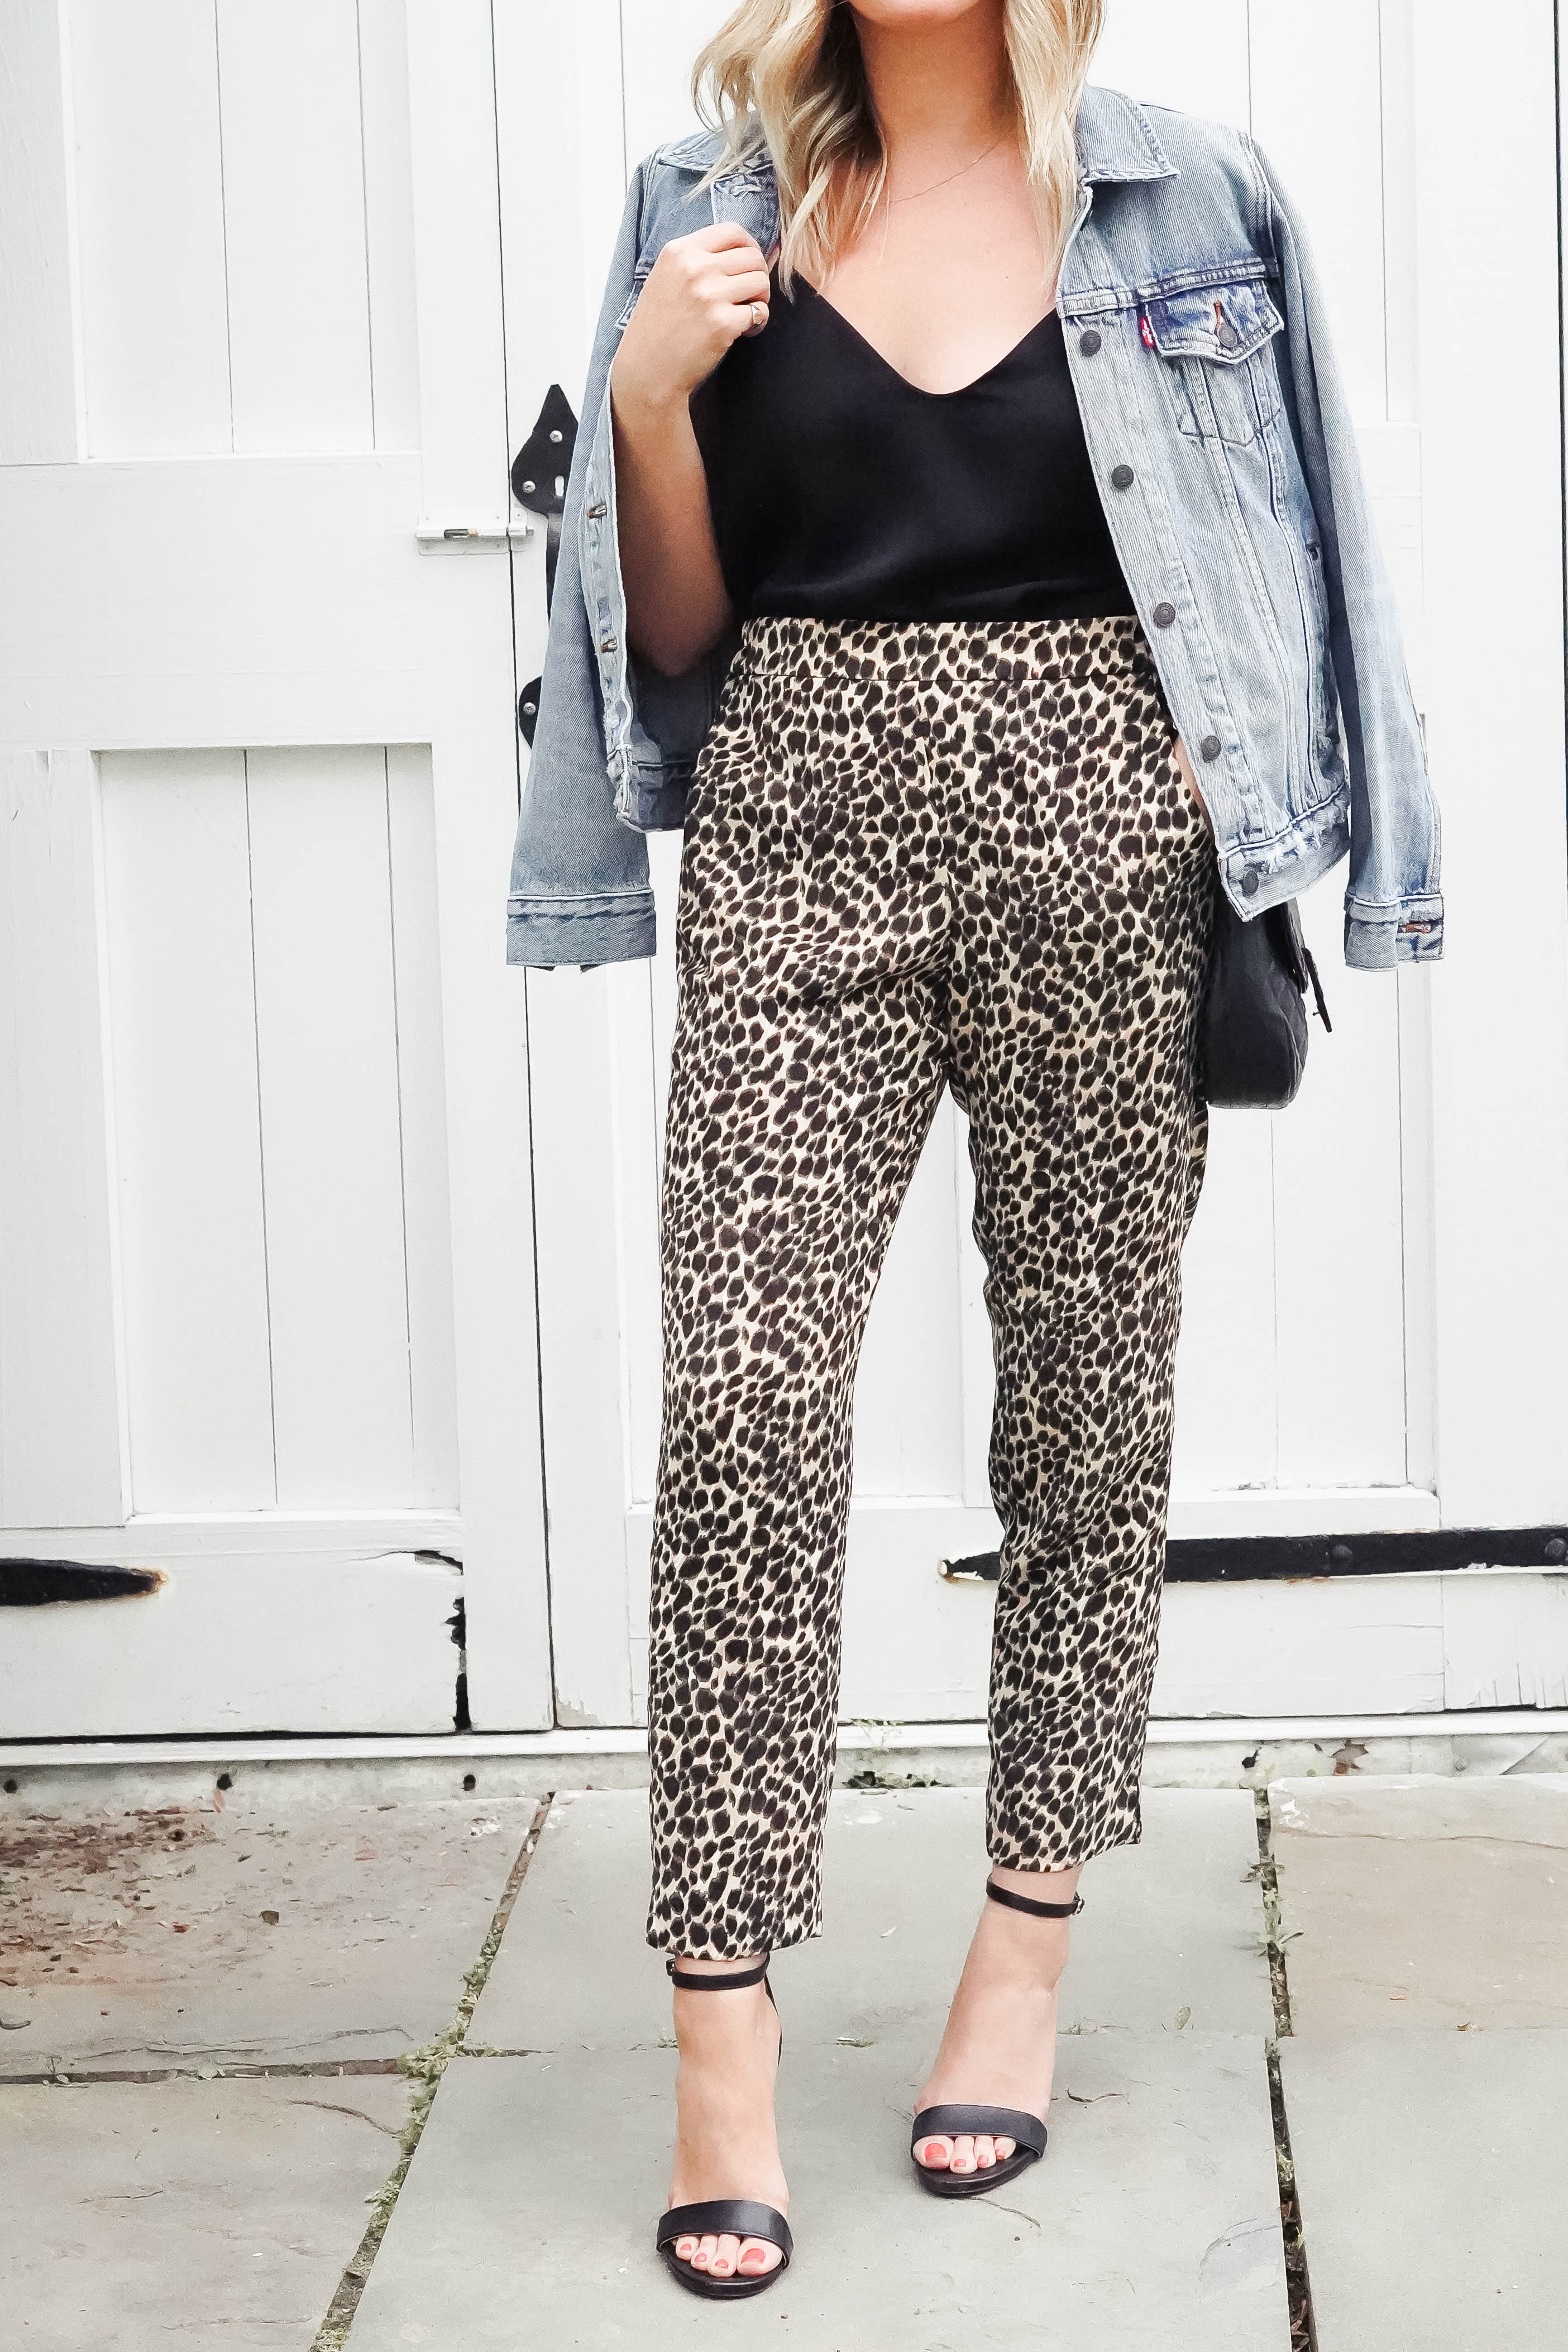 How To Wear Leopard Pants